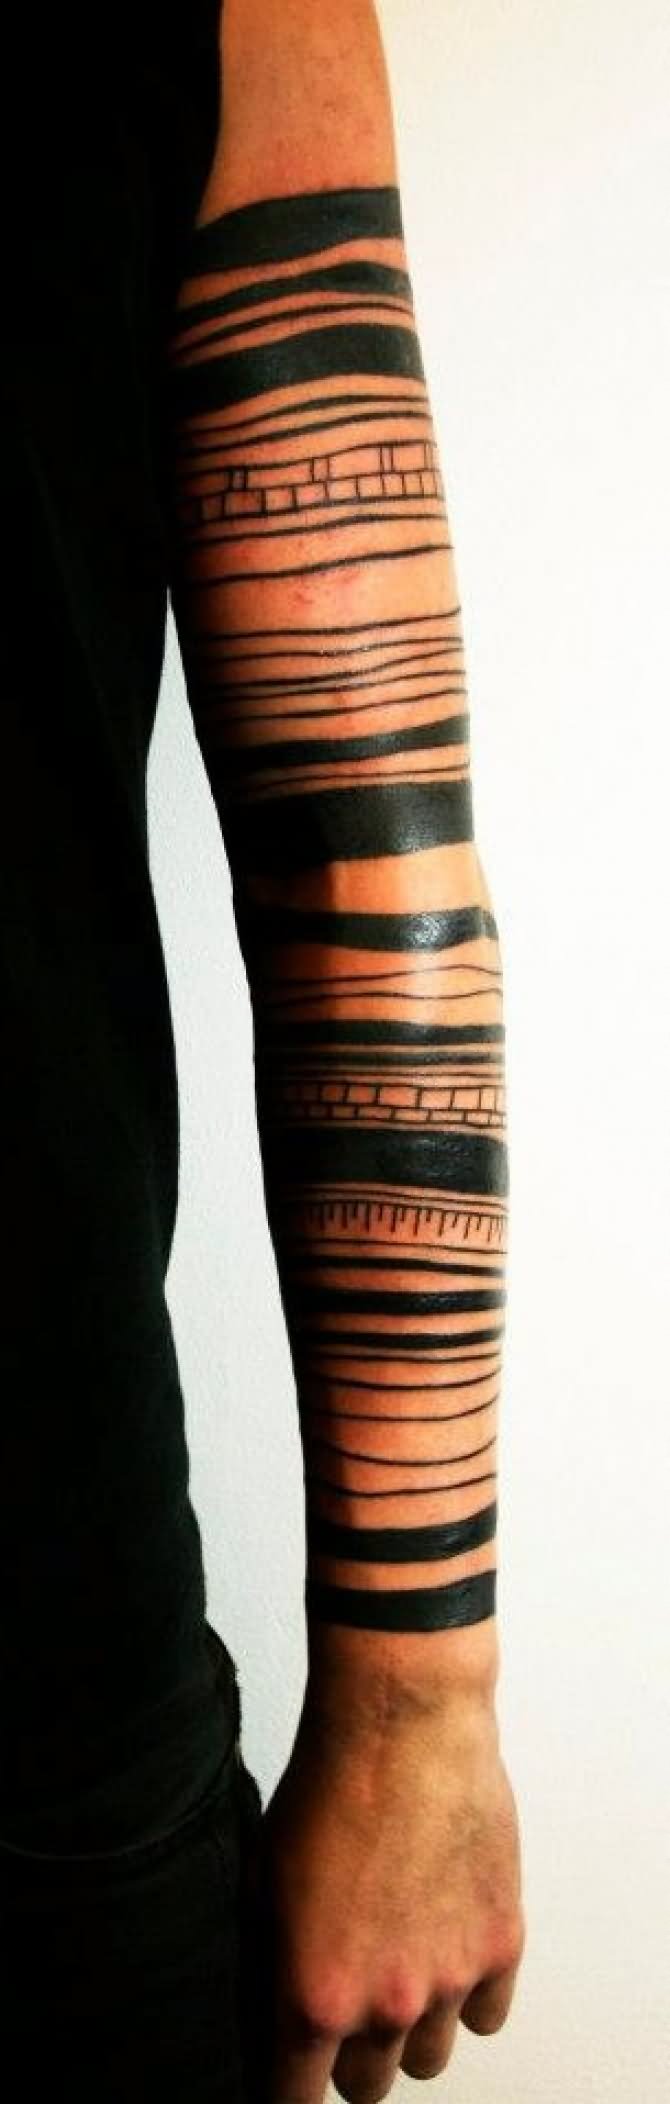 Black Armbands Tattoo On Full Sleeve